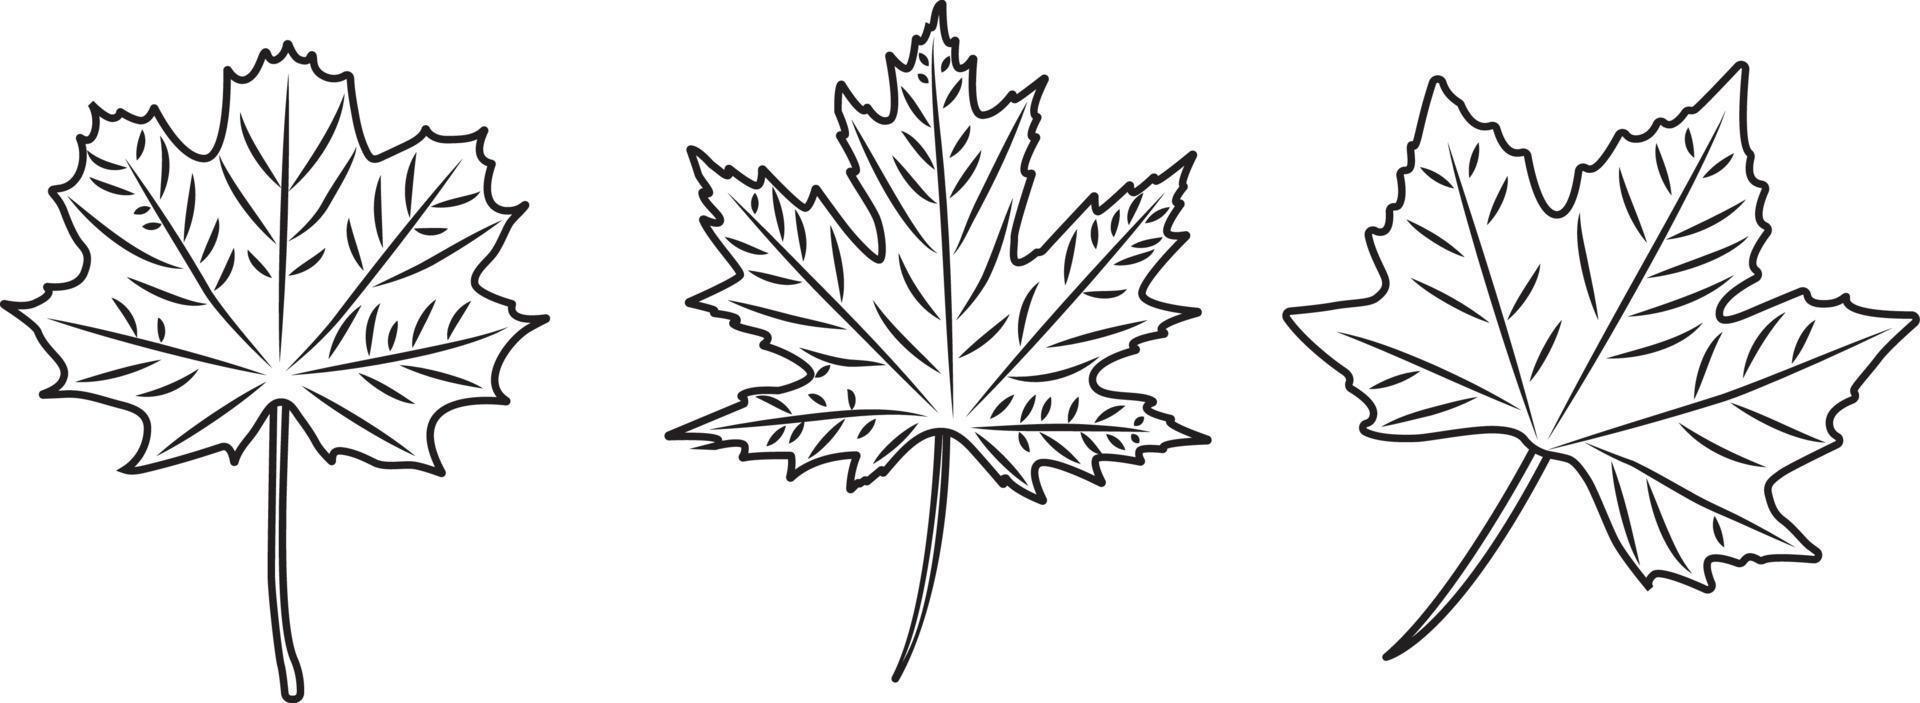 klassisk falla löv i tre annorlunda former svart och vit. vektor illustration